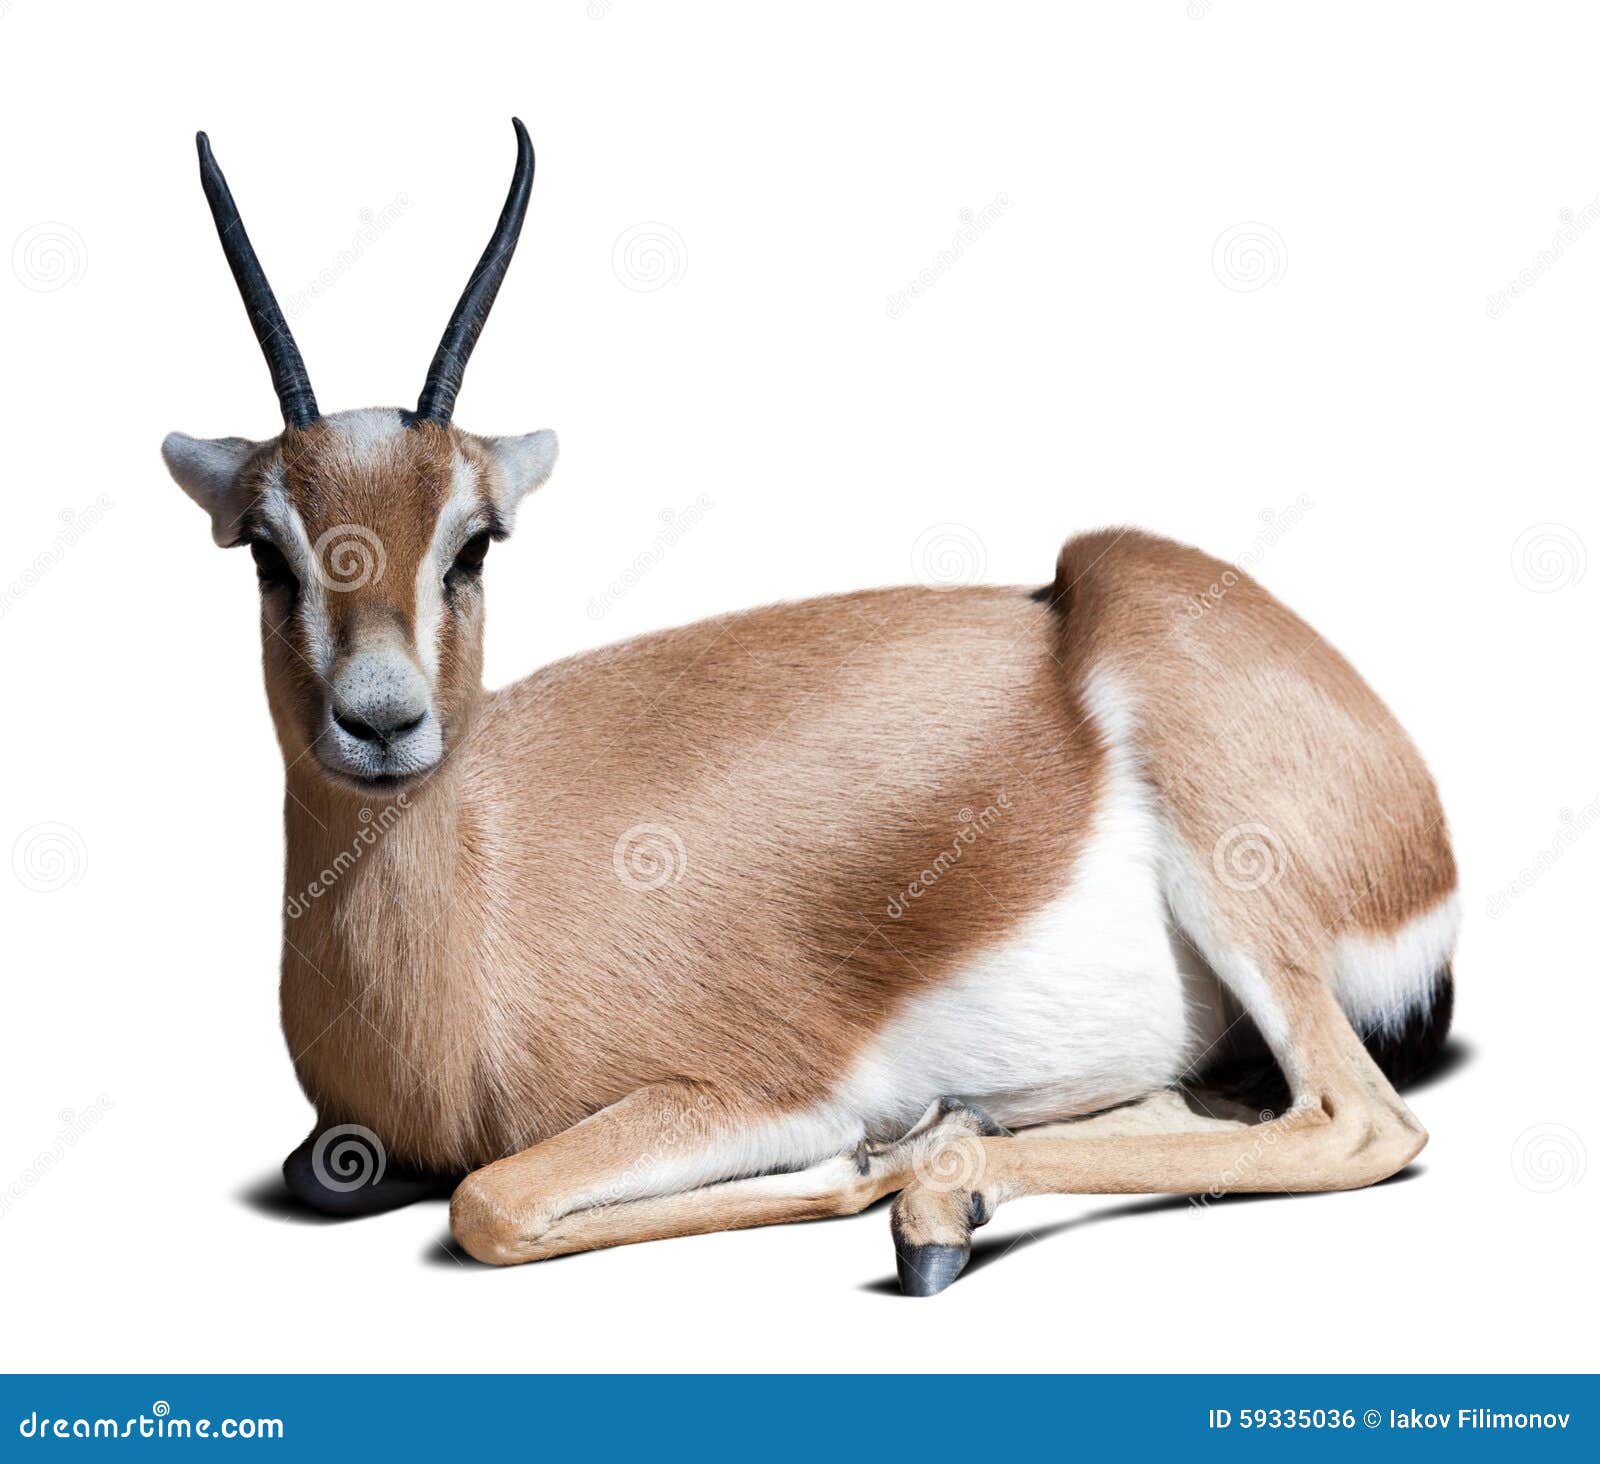 gazelle saharian dorcas.  over white